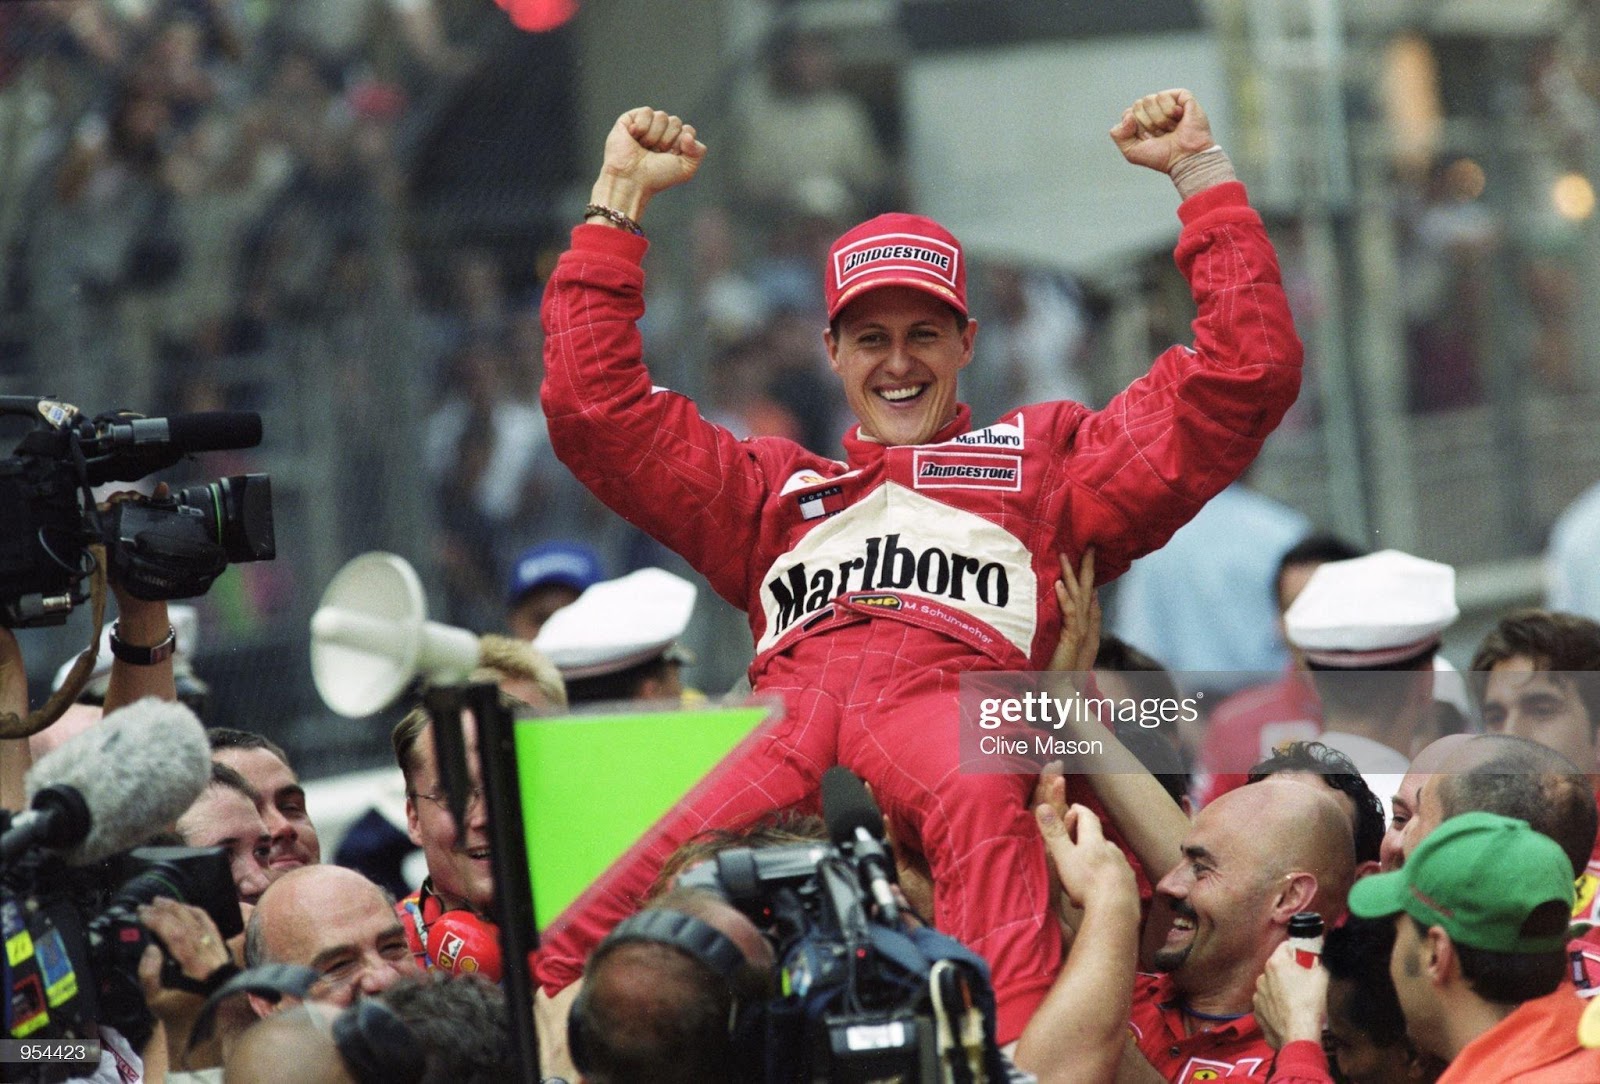 27 May 2001: Ferrari driver Michael Schumacher celebrates winning the Formula One Monaco Grand Prix in Monte Carlo, Monaco.